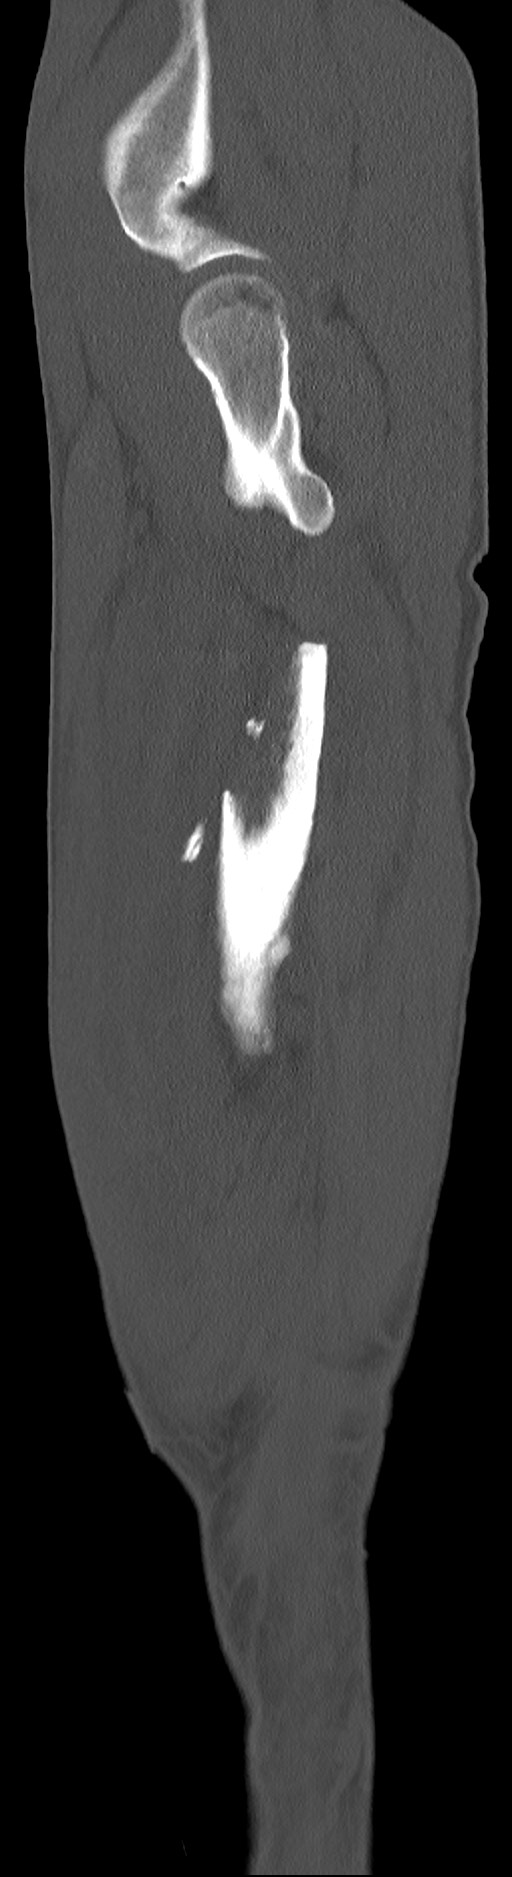 Chronic osteomyelitis (with sequestrum) (Radiopaedia 74813-85822 C 90).jpg